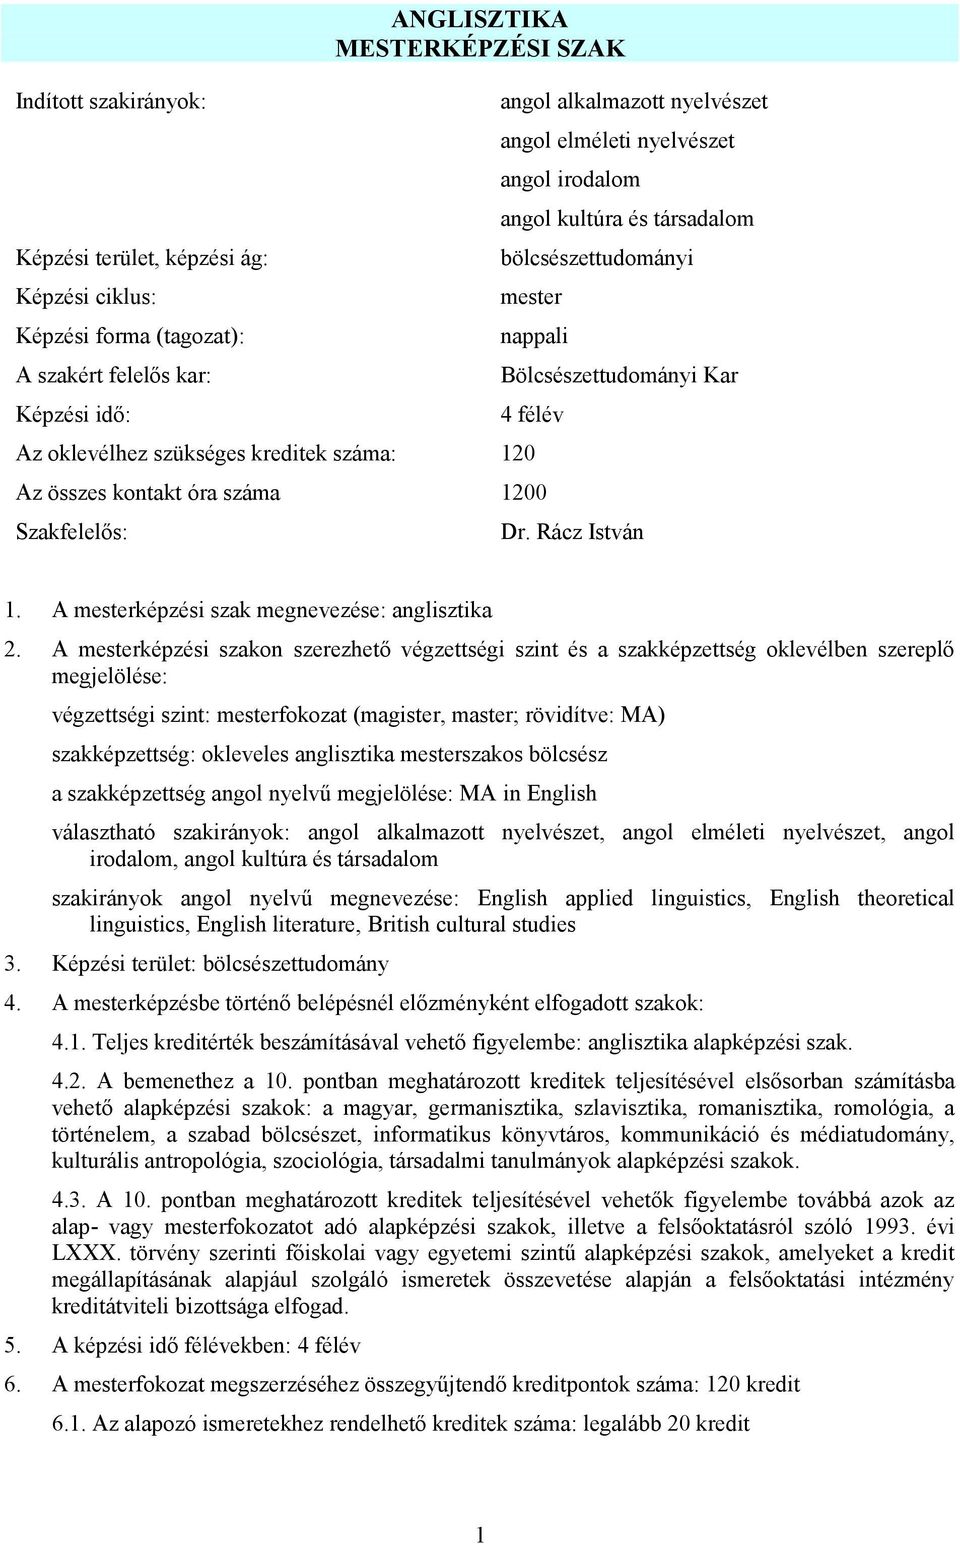 ANGLISZTIKA MESTERKÉPZÉSI SZAK - PDF Ingyenes letöltés